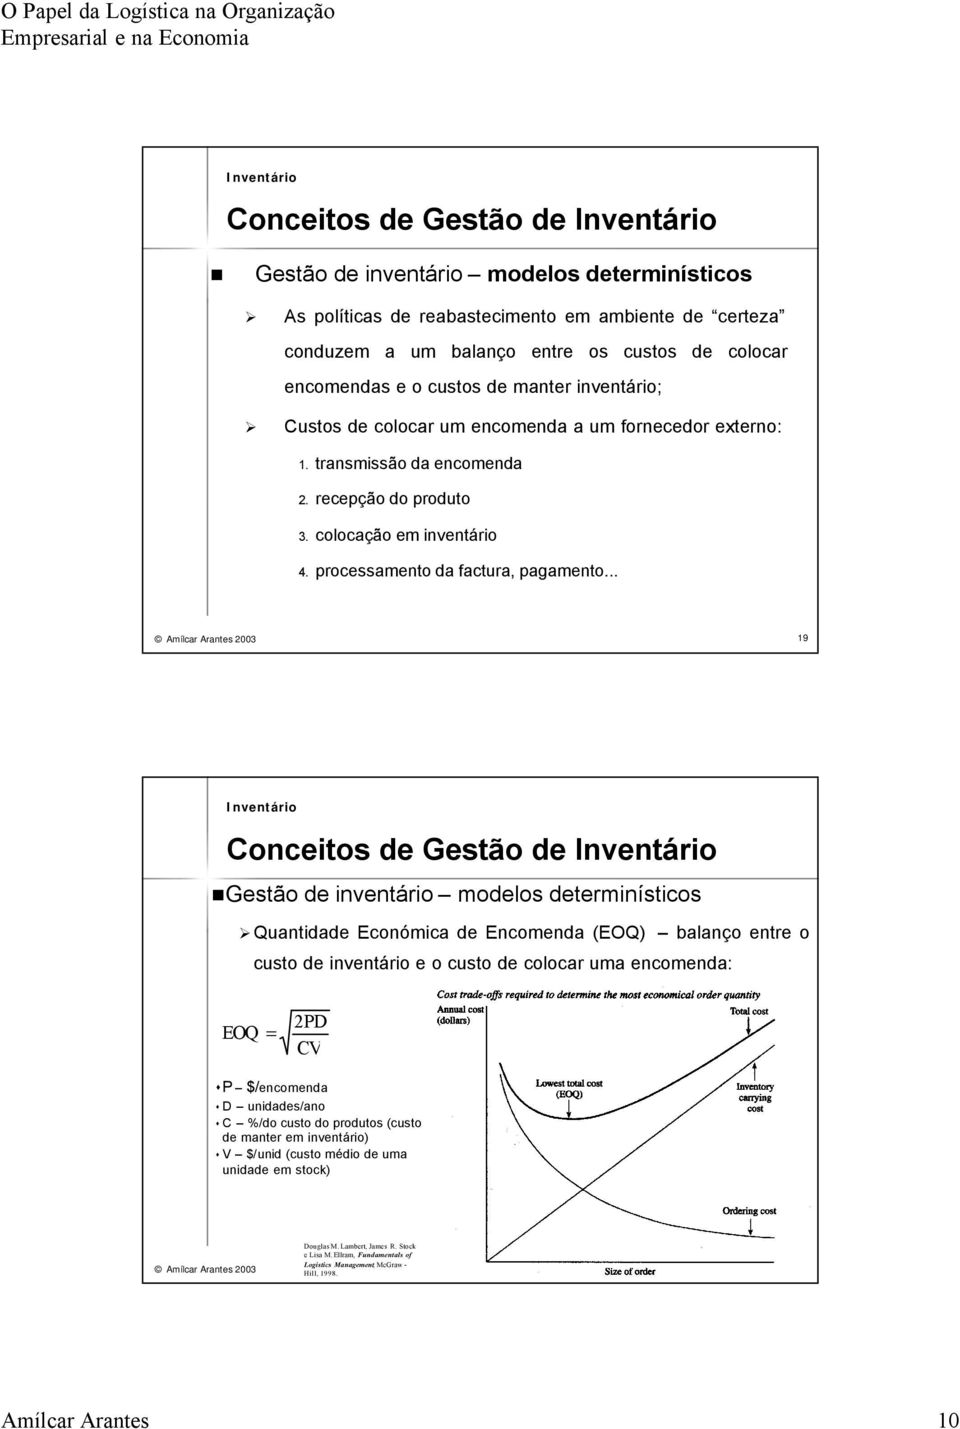 .. Amílcar Arantes 2003 19 Conceitos de Gestão de Gestão de inventário modelos determinísticos Quantidade Económica de Encomenda (EOQ) balanço entre o custo de inventário e o custo de colocar uma